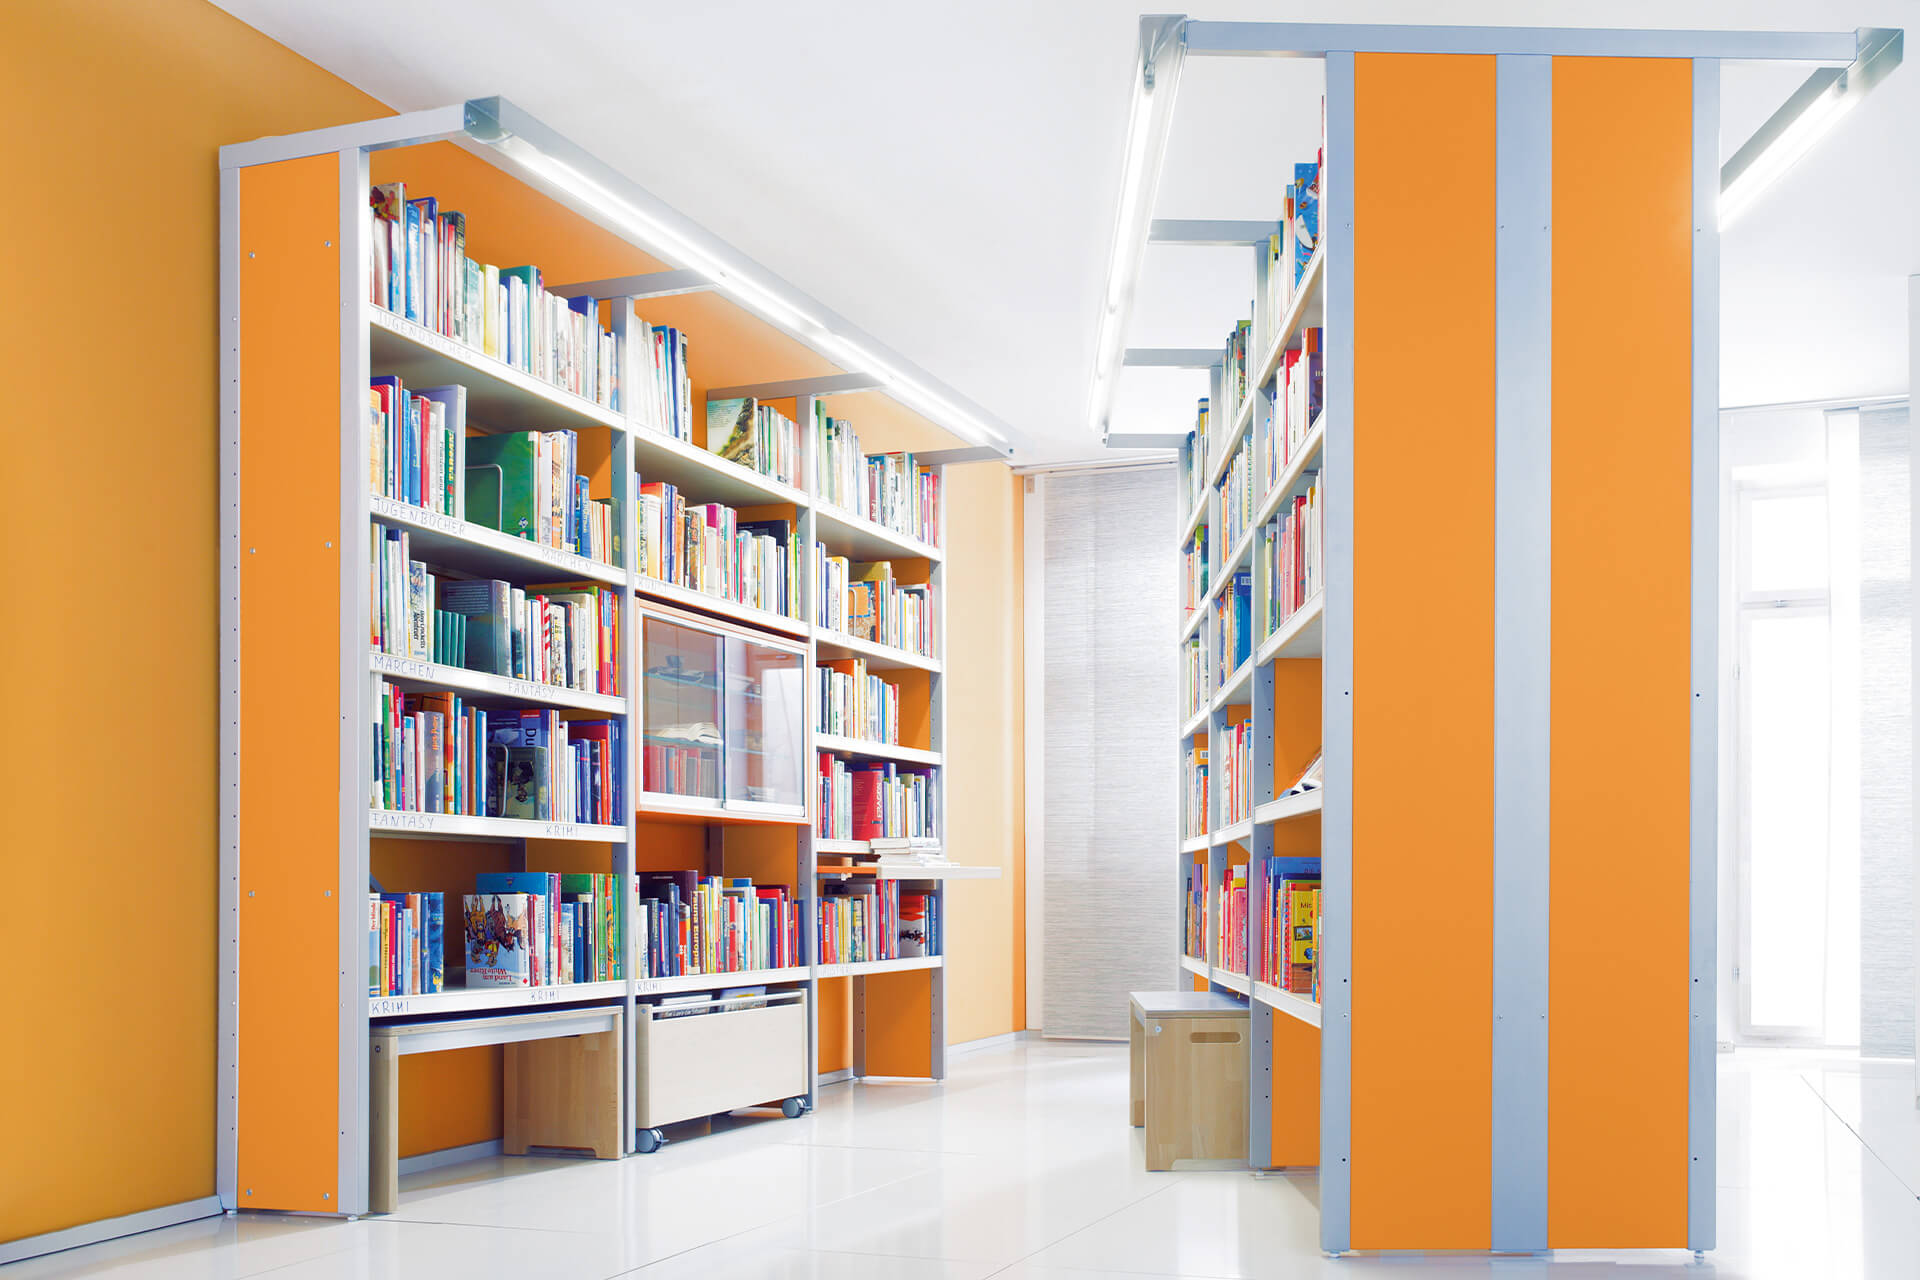 Bibliothek | Grid | 2 | Regale | Bibliothek mit orangen Regalschränke mit Büchern